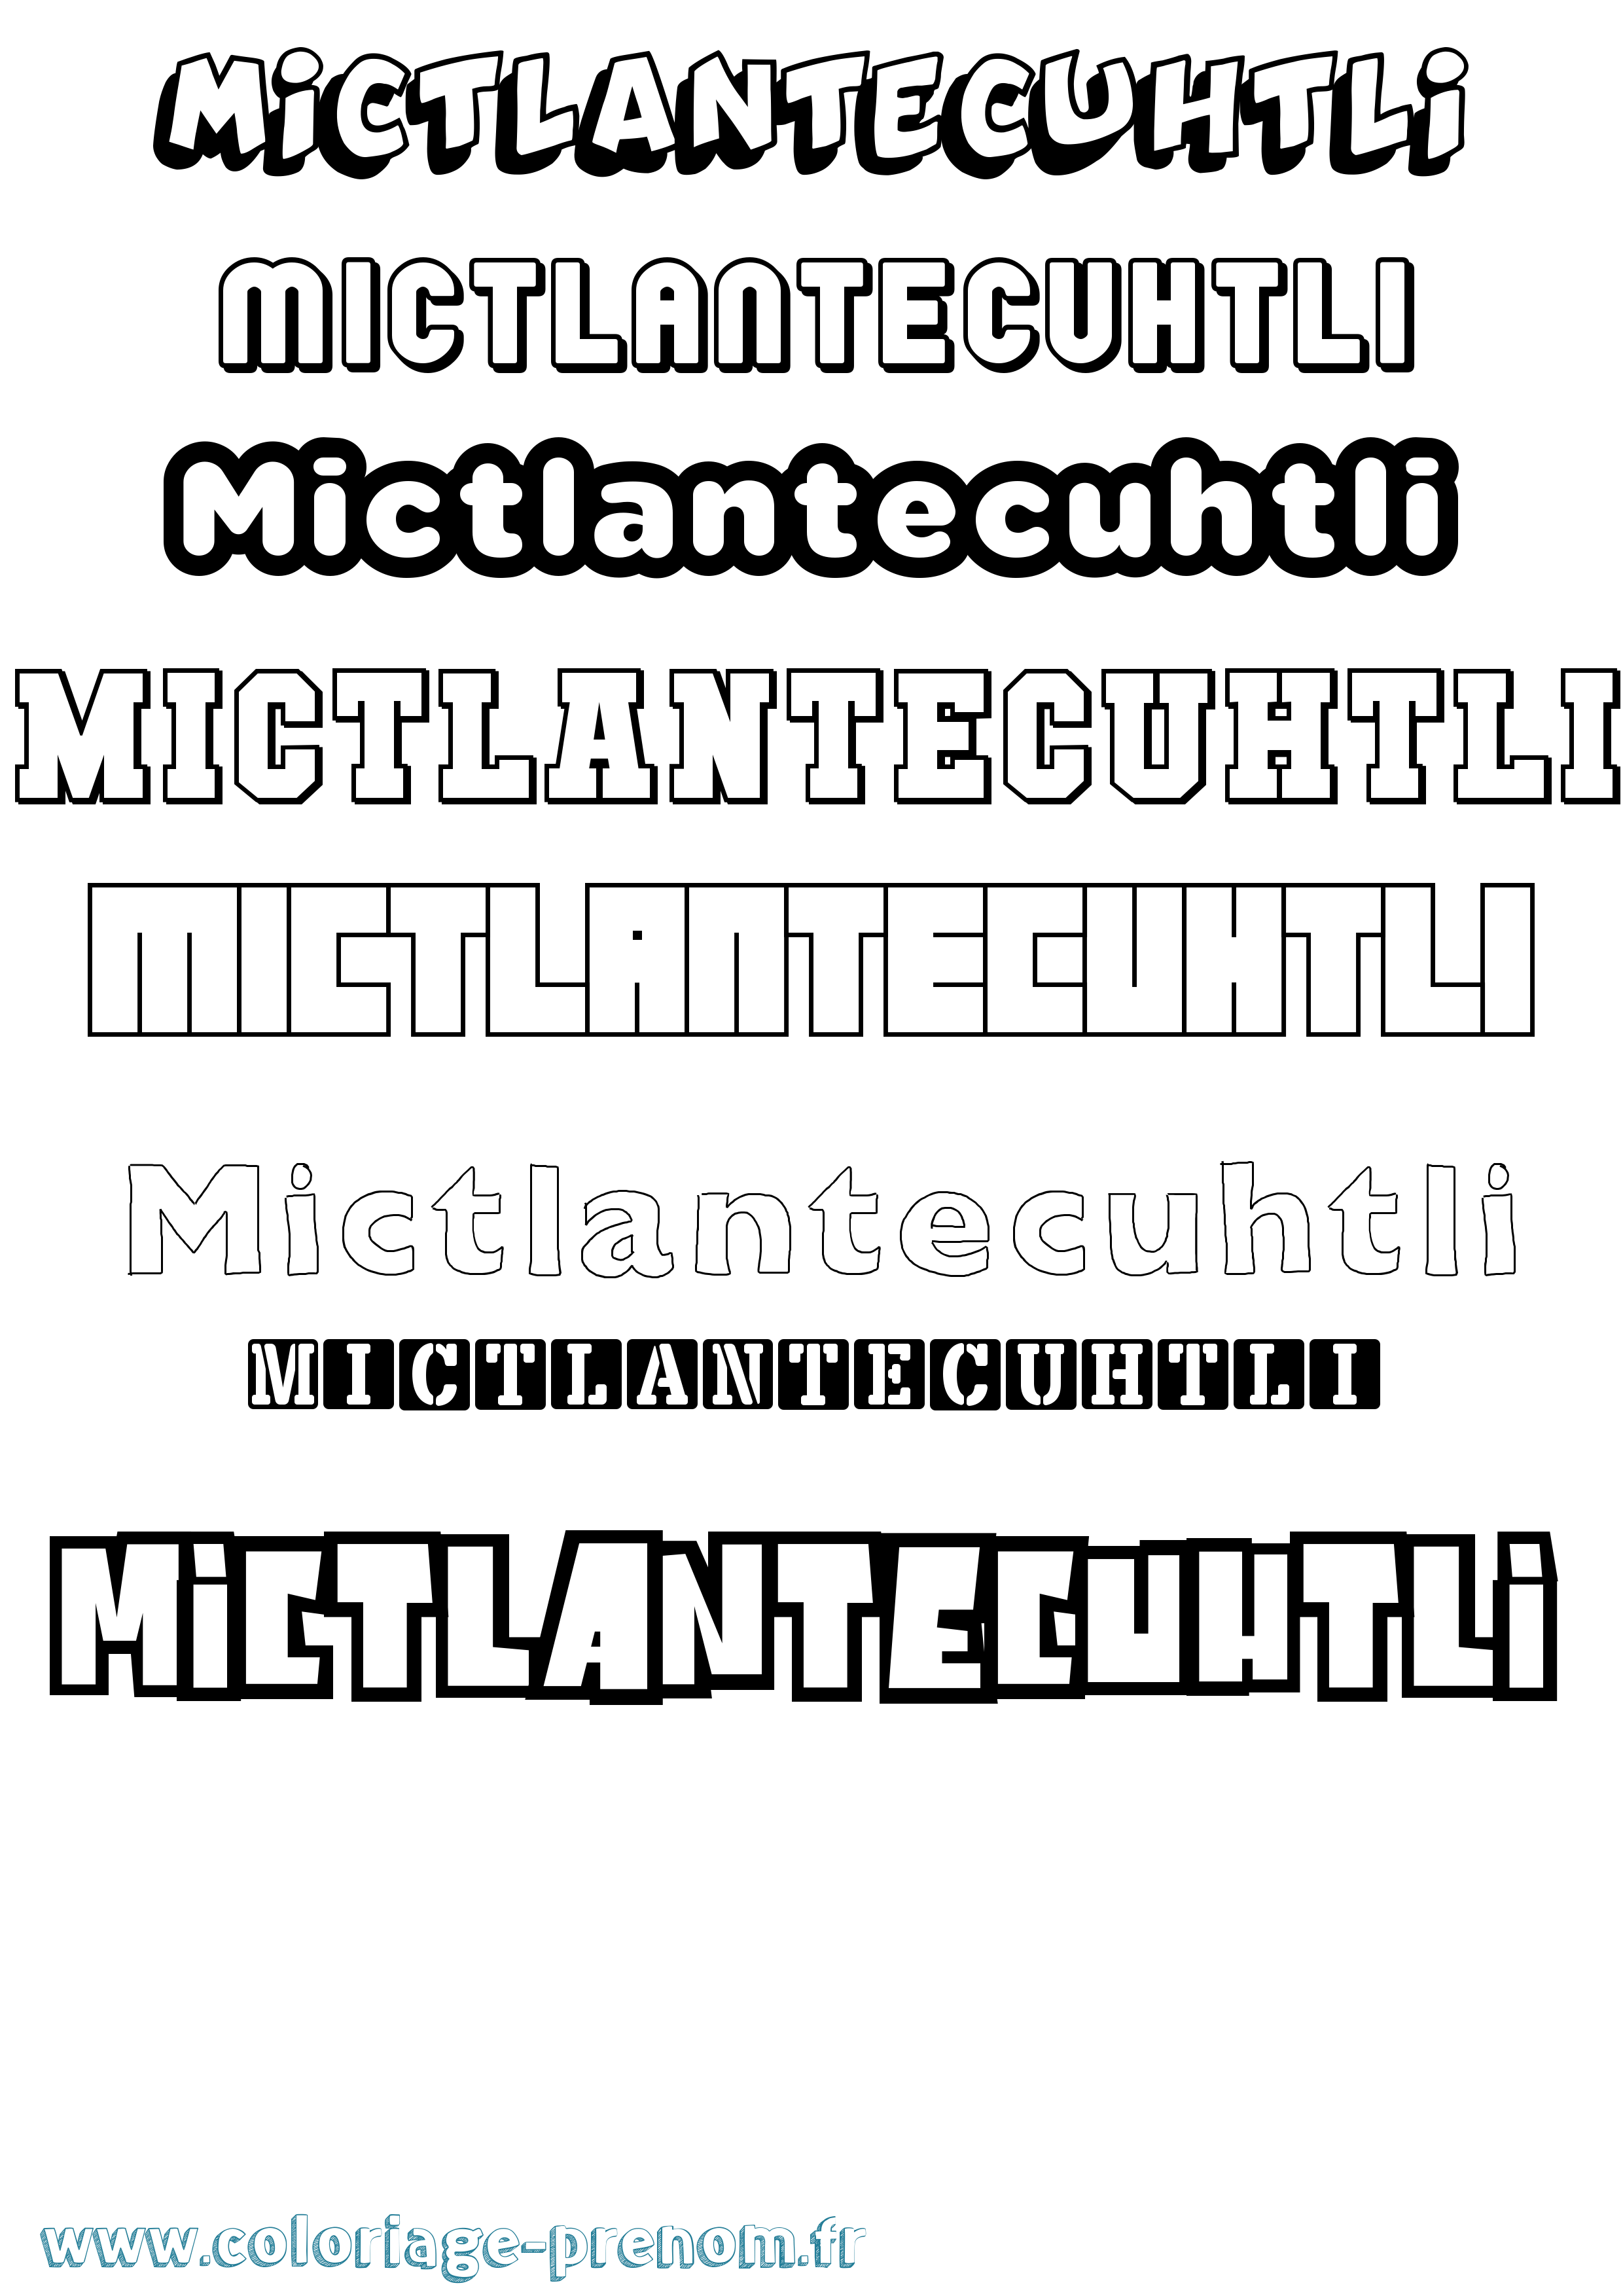 Coloriage prénom Mictlantecuhtli Simple